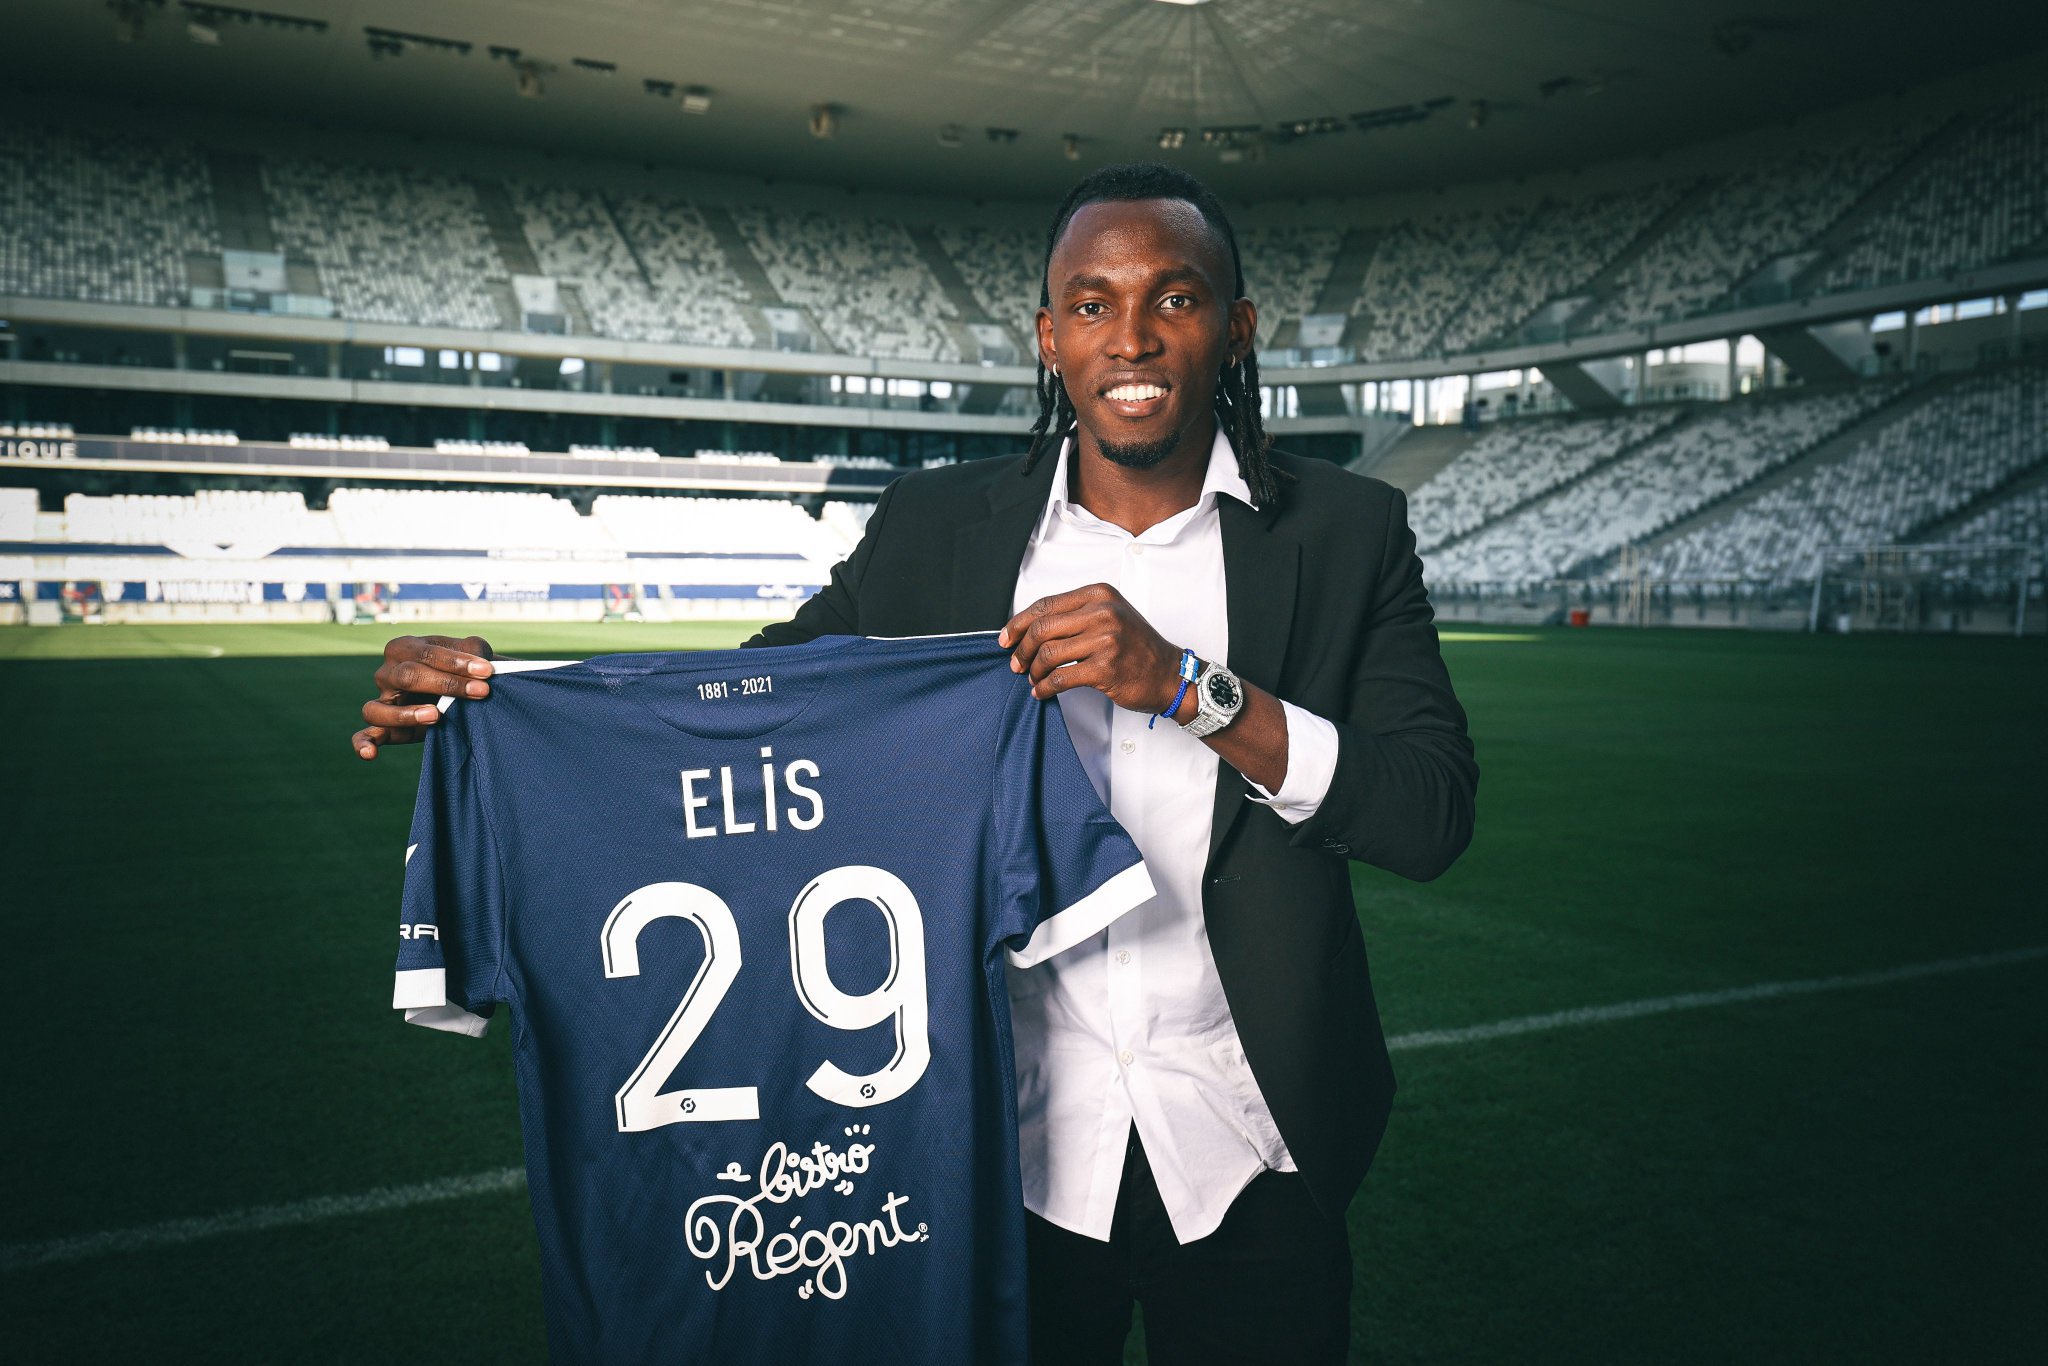 “Me siento muy feliz. Es una linda oportunidad”: Elis tras llegar a la Ligue 1 de Francia